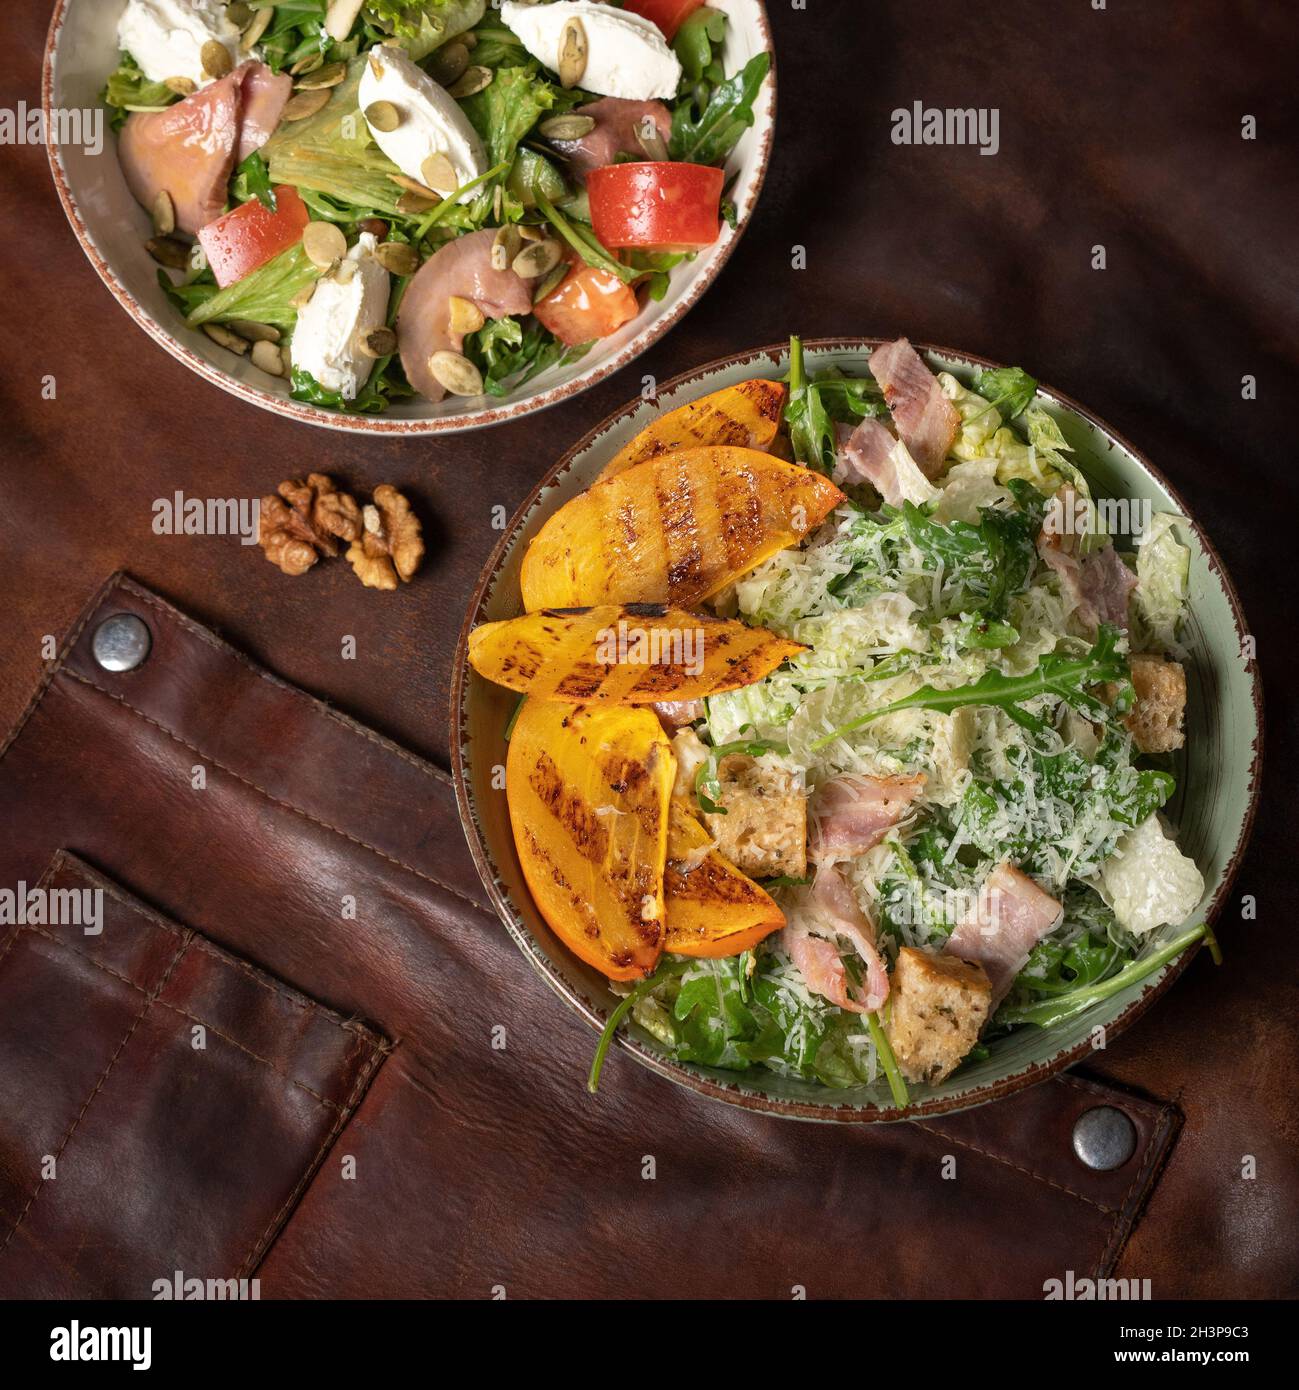 Des salades de saumon au fromage mozzarella et des tranches de fruits grillées se trouvent sur une table recouverte d'un chiffon en cuir.Restaurant conce Banque D'Images